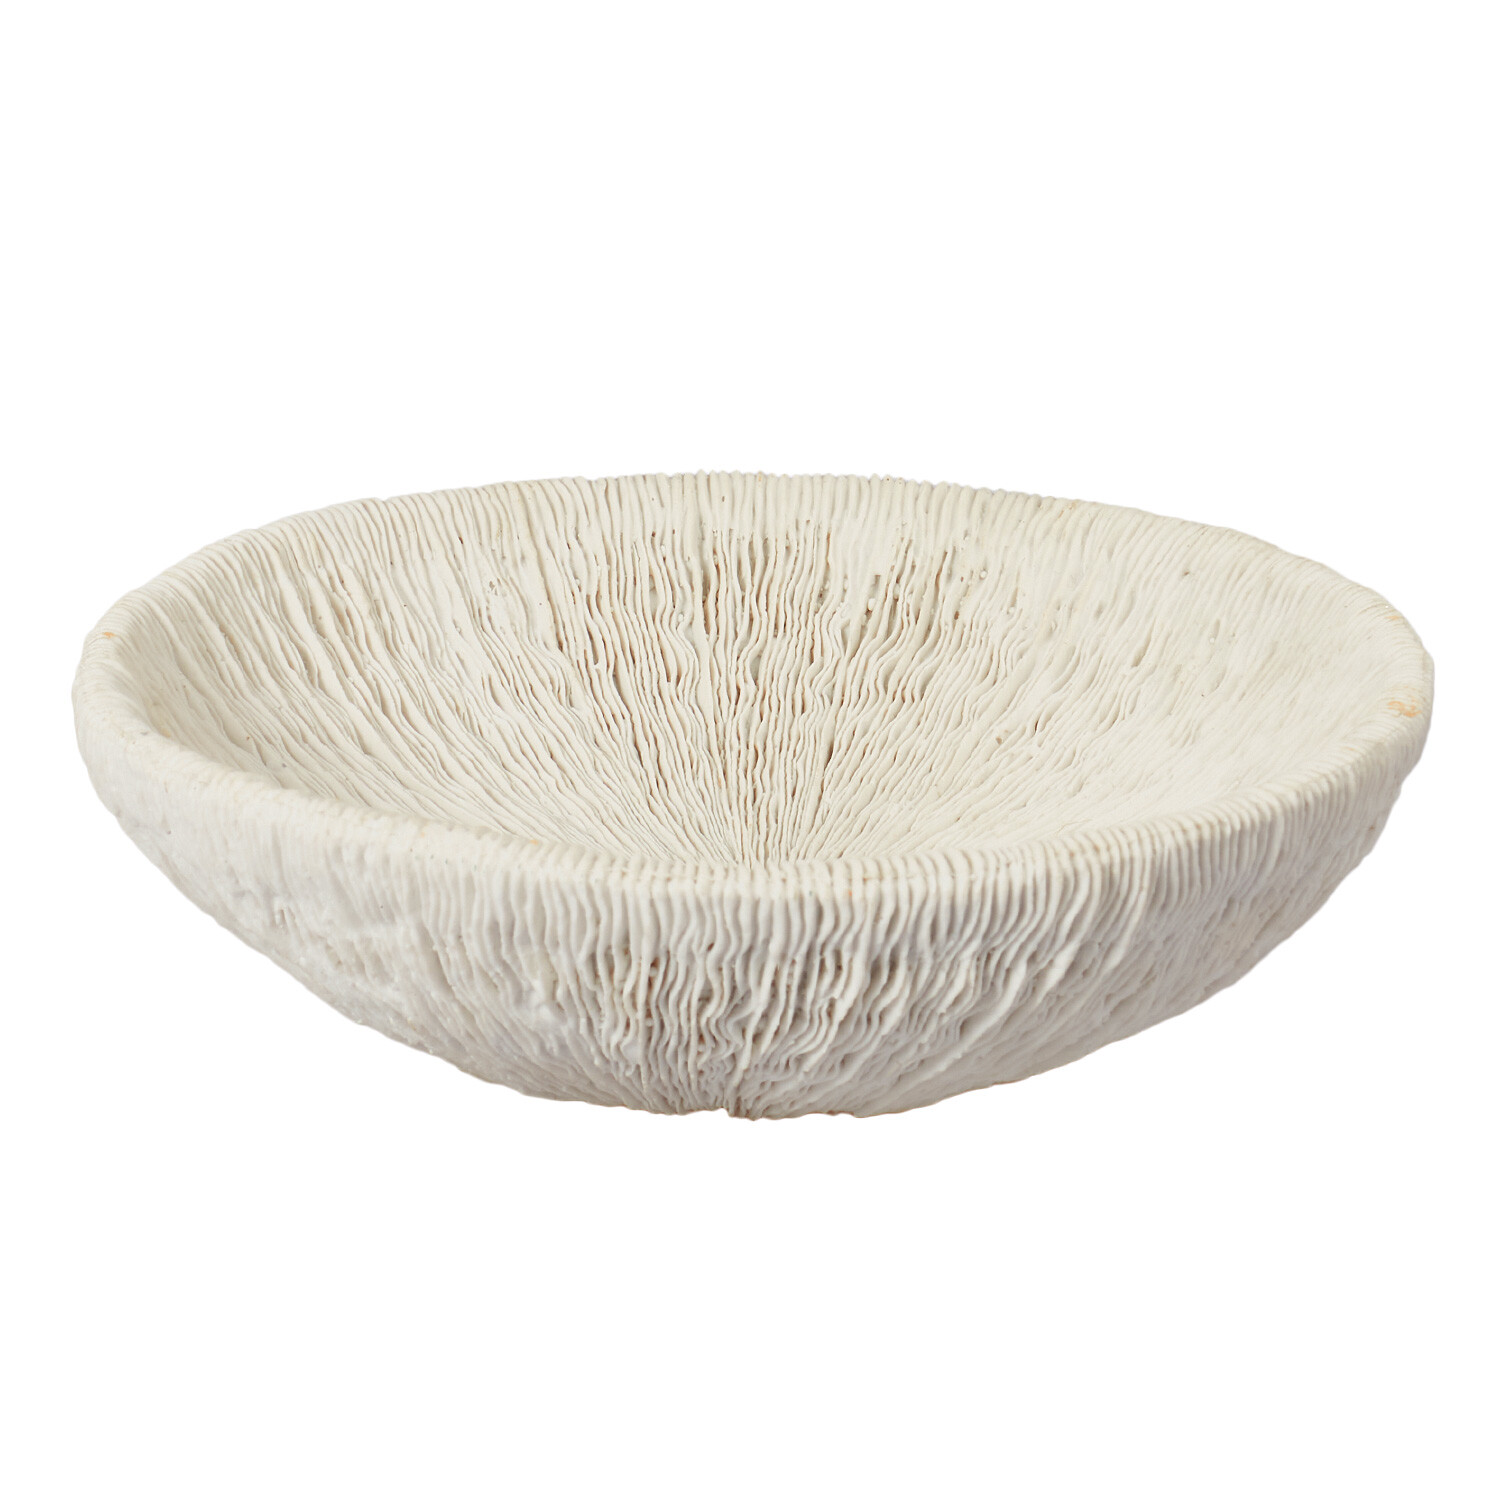 Sofia Textured Bowl - White Image 1